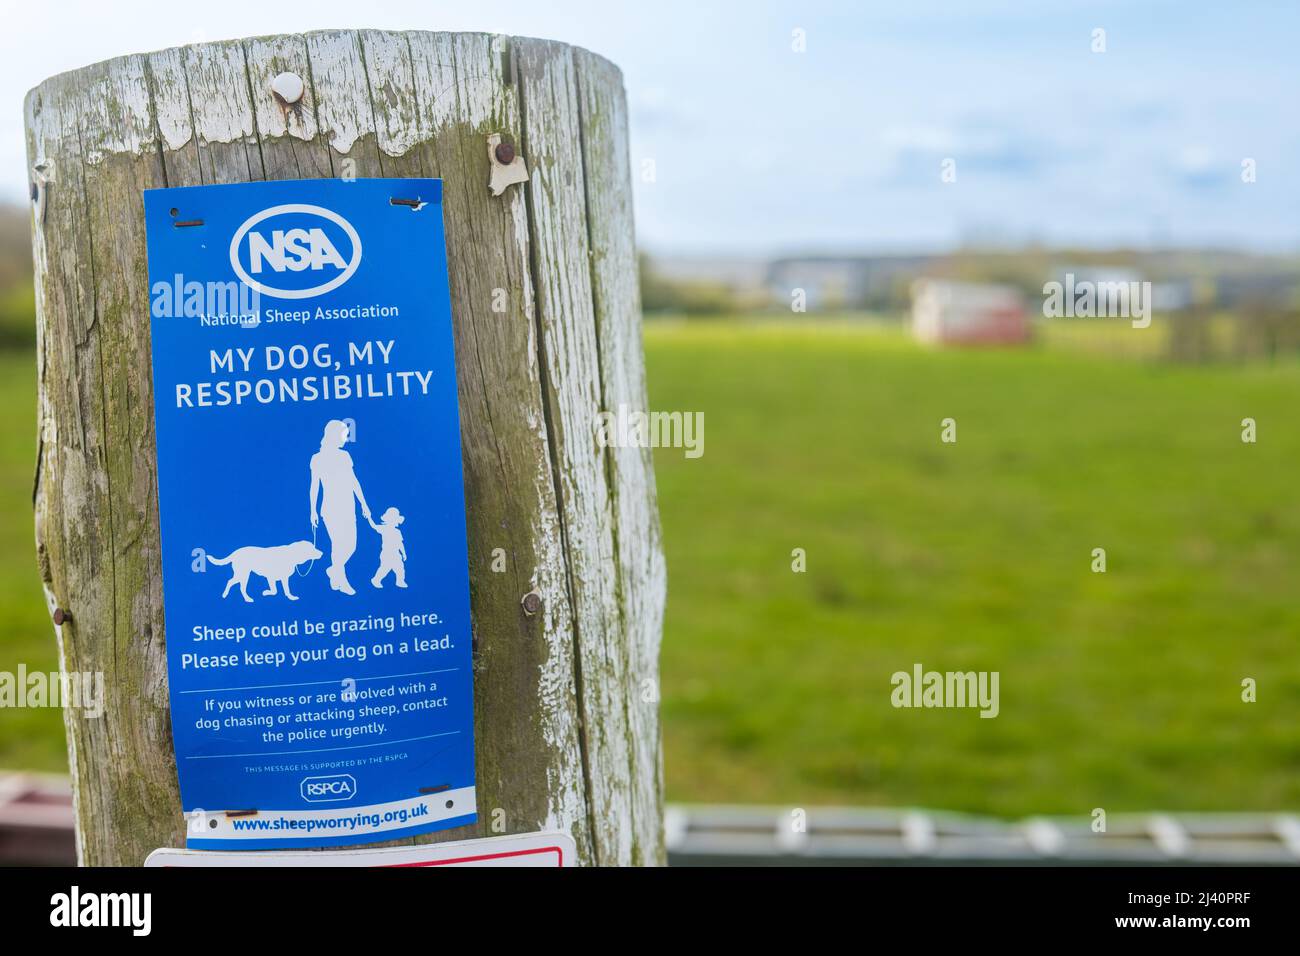 Die National Sheep Association (NSA) unterzeichnet einen Zaunposten, in dem Hundebesitzer die Verantwortung für ihre Hunde übernehmen, um sicherzustellen, dass keine Tierschäden verursacht werden. Stockfoto